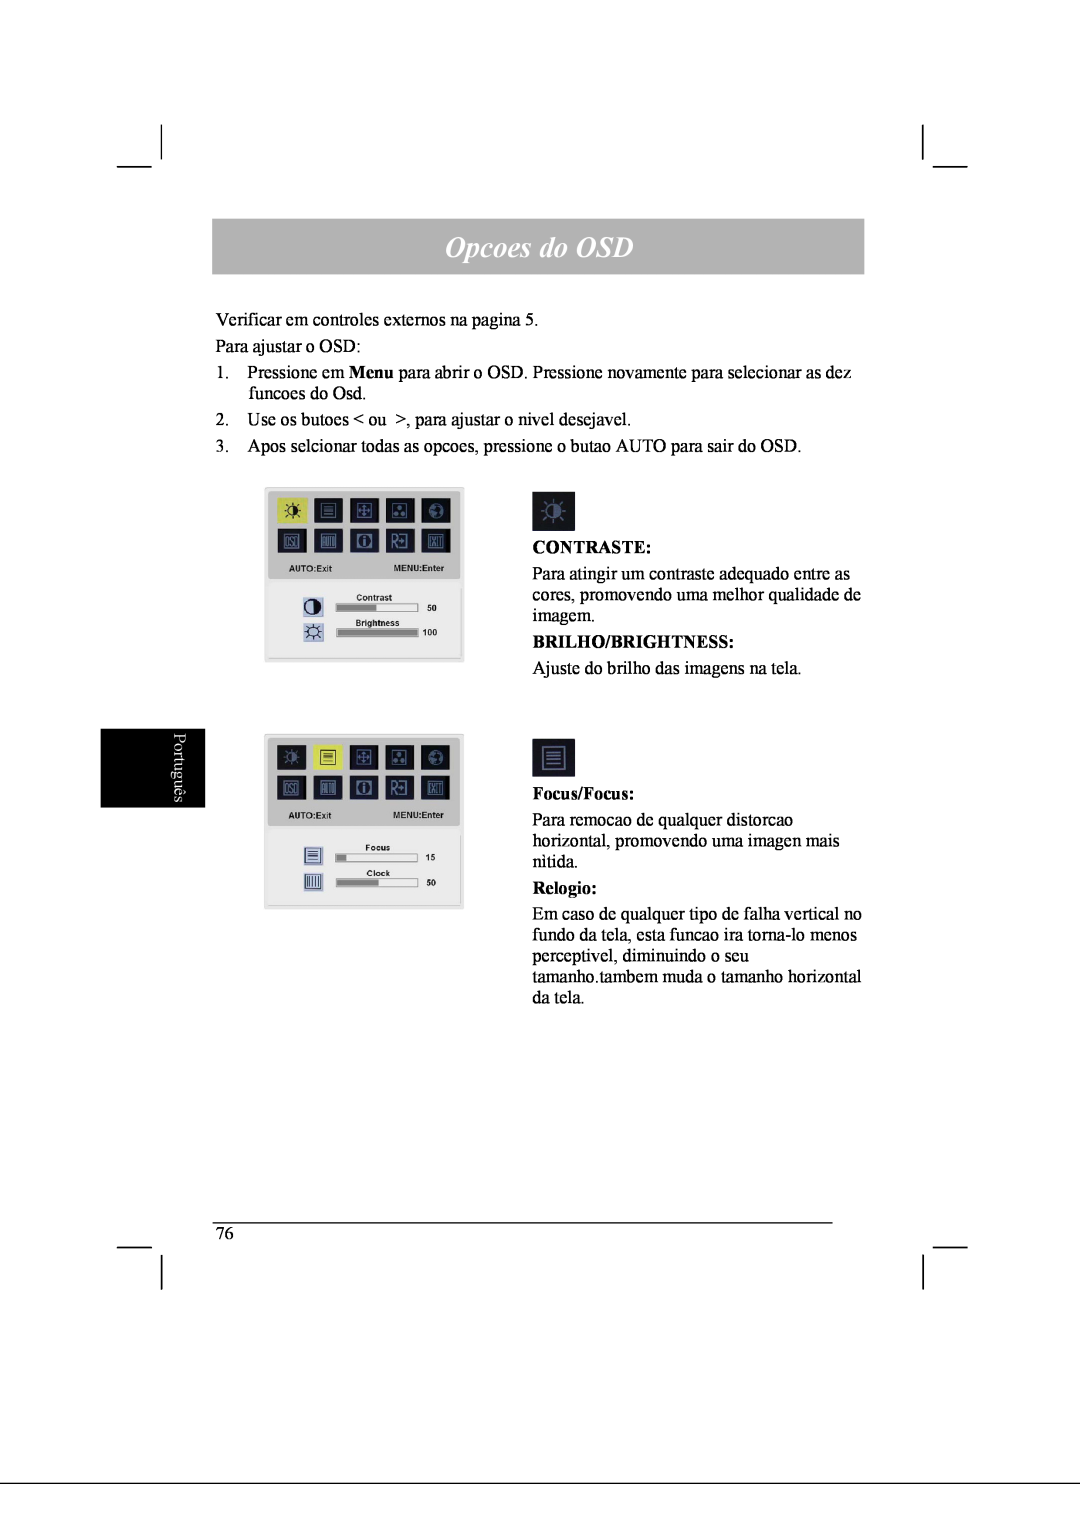 Acer AL2021 manual Opcoes do OSD, Português, Contraste, Brilho/Brightness, Focus/Focus, Relogio 